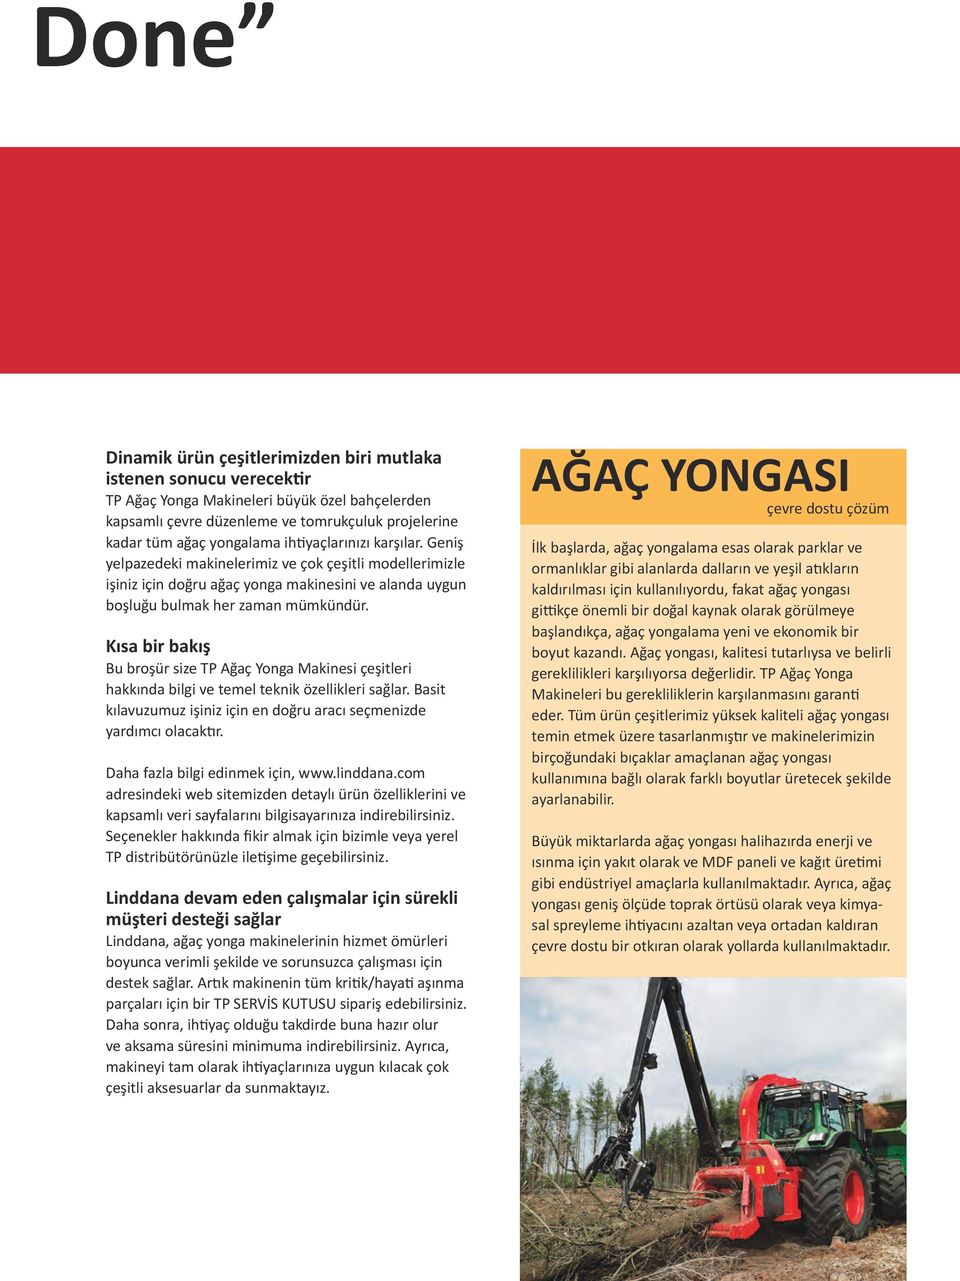 Kısa bir bakış Bu broşür size TP Ağaç Yonga Makinesi çeşitleri hakkında bilgi ve temel teknik özellikleri sağlar. Basit kılavuzumuz işiniz için en doğru aracı seçmenizde yardımcı olacaktır.